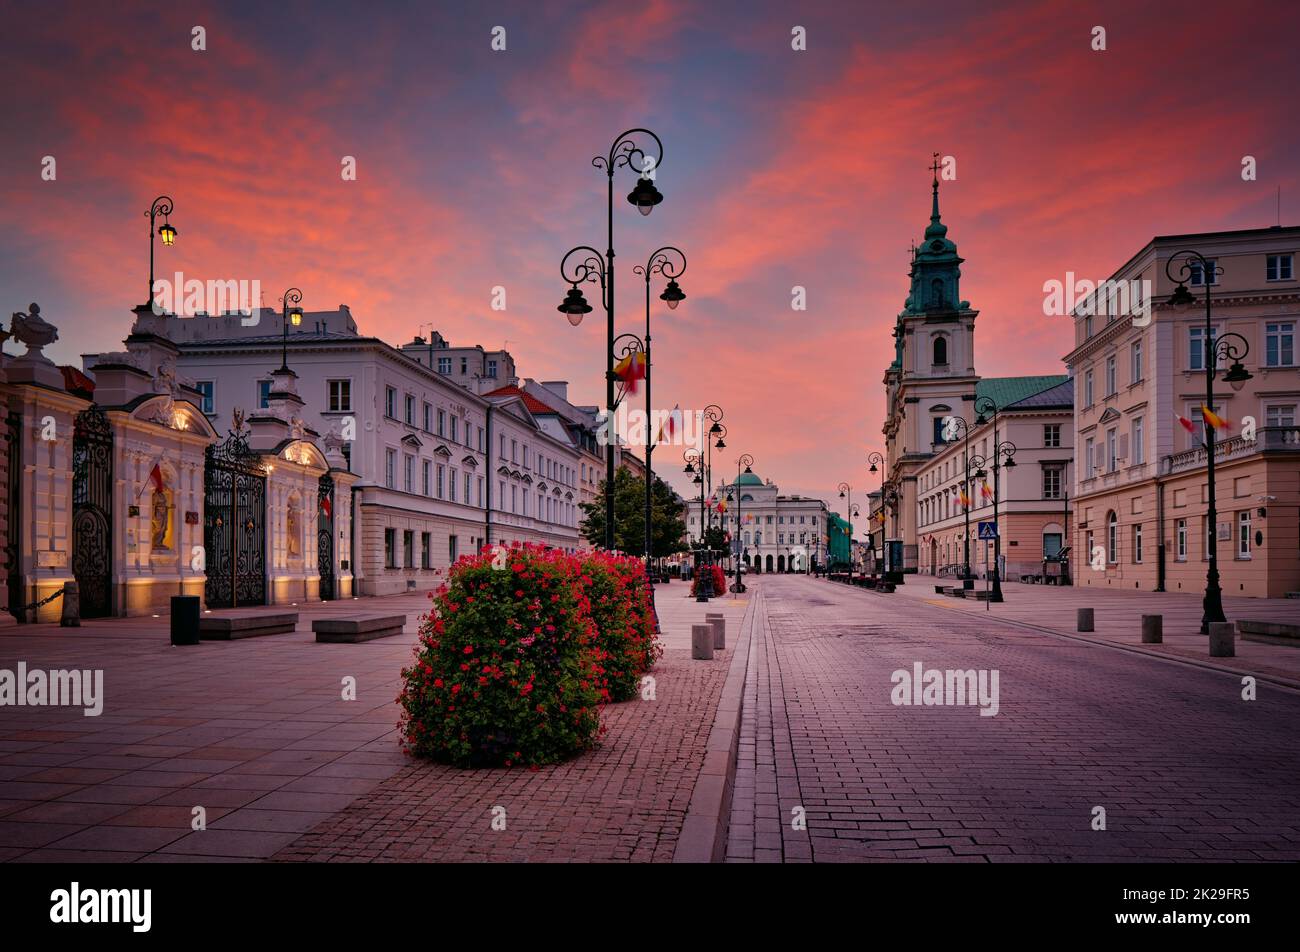 Krakowskie Przedmiescie - prestigiosa calle antigua de Varsovia. Universidad de Varsovia e Iglesia de la Santa Cruz Foto de stock